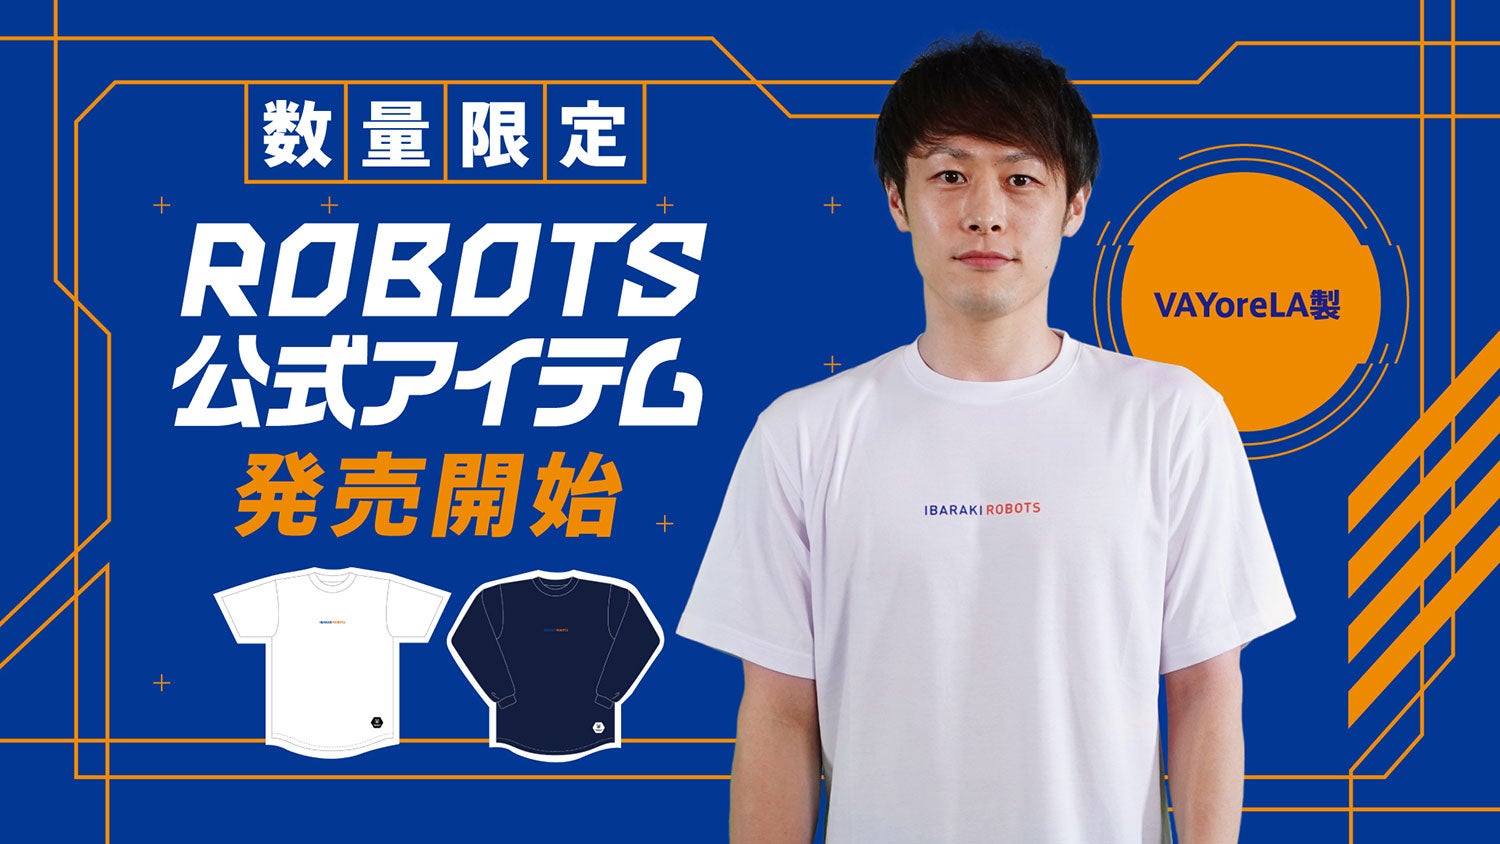 ROBOTS公式アイテム販売のお知らせ